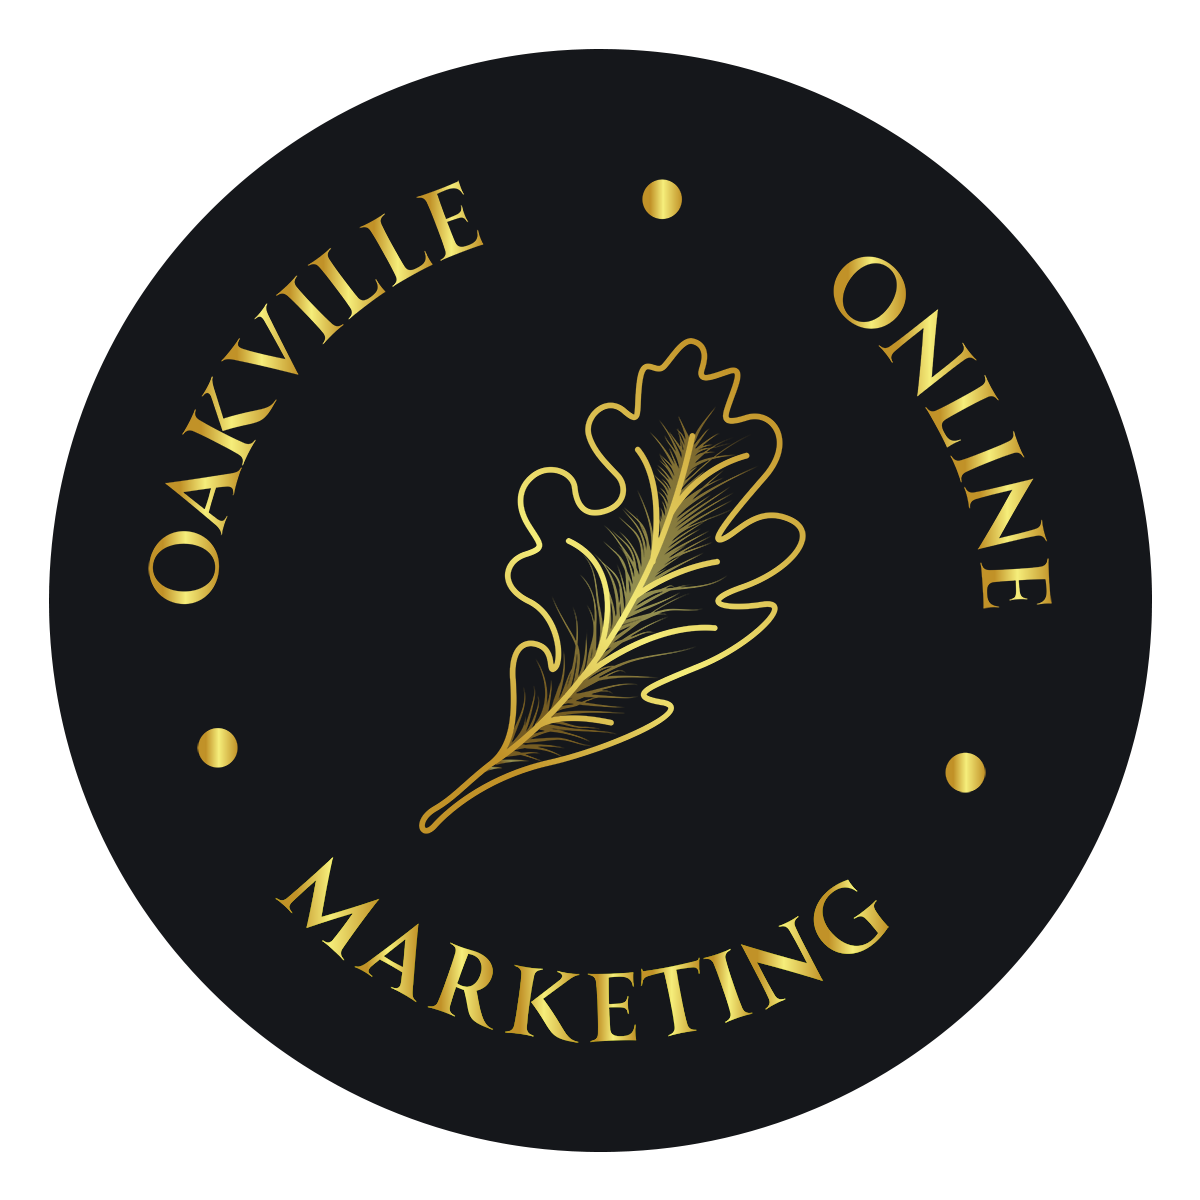 Oakville Online Marketing